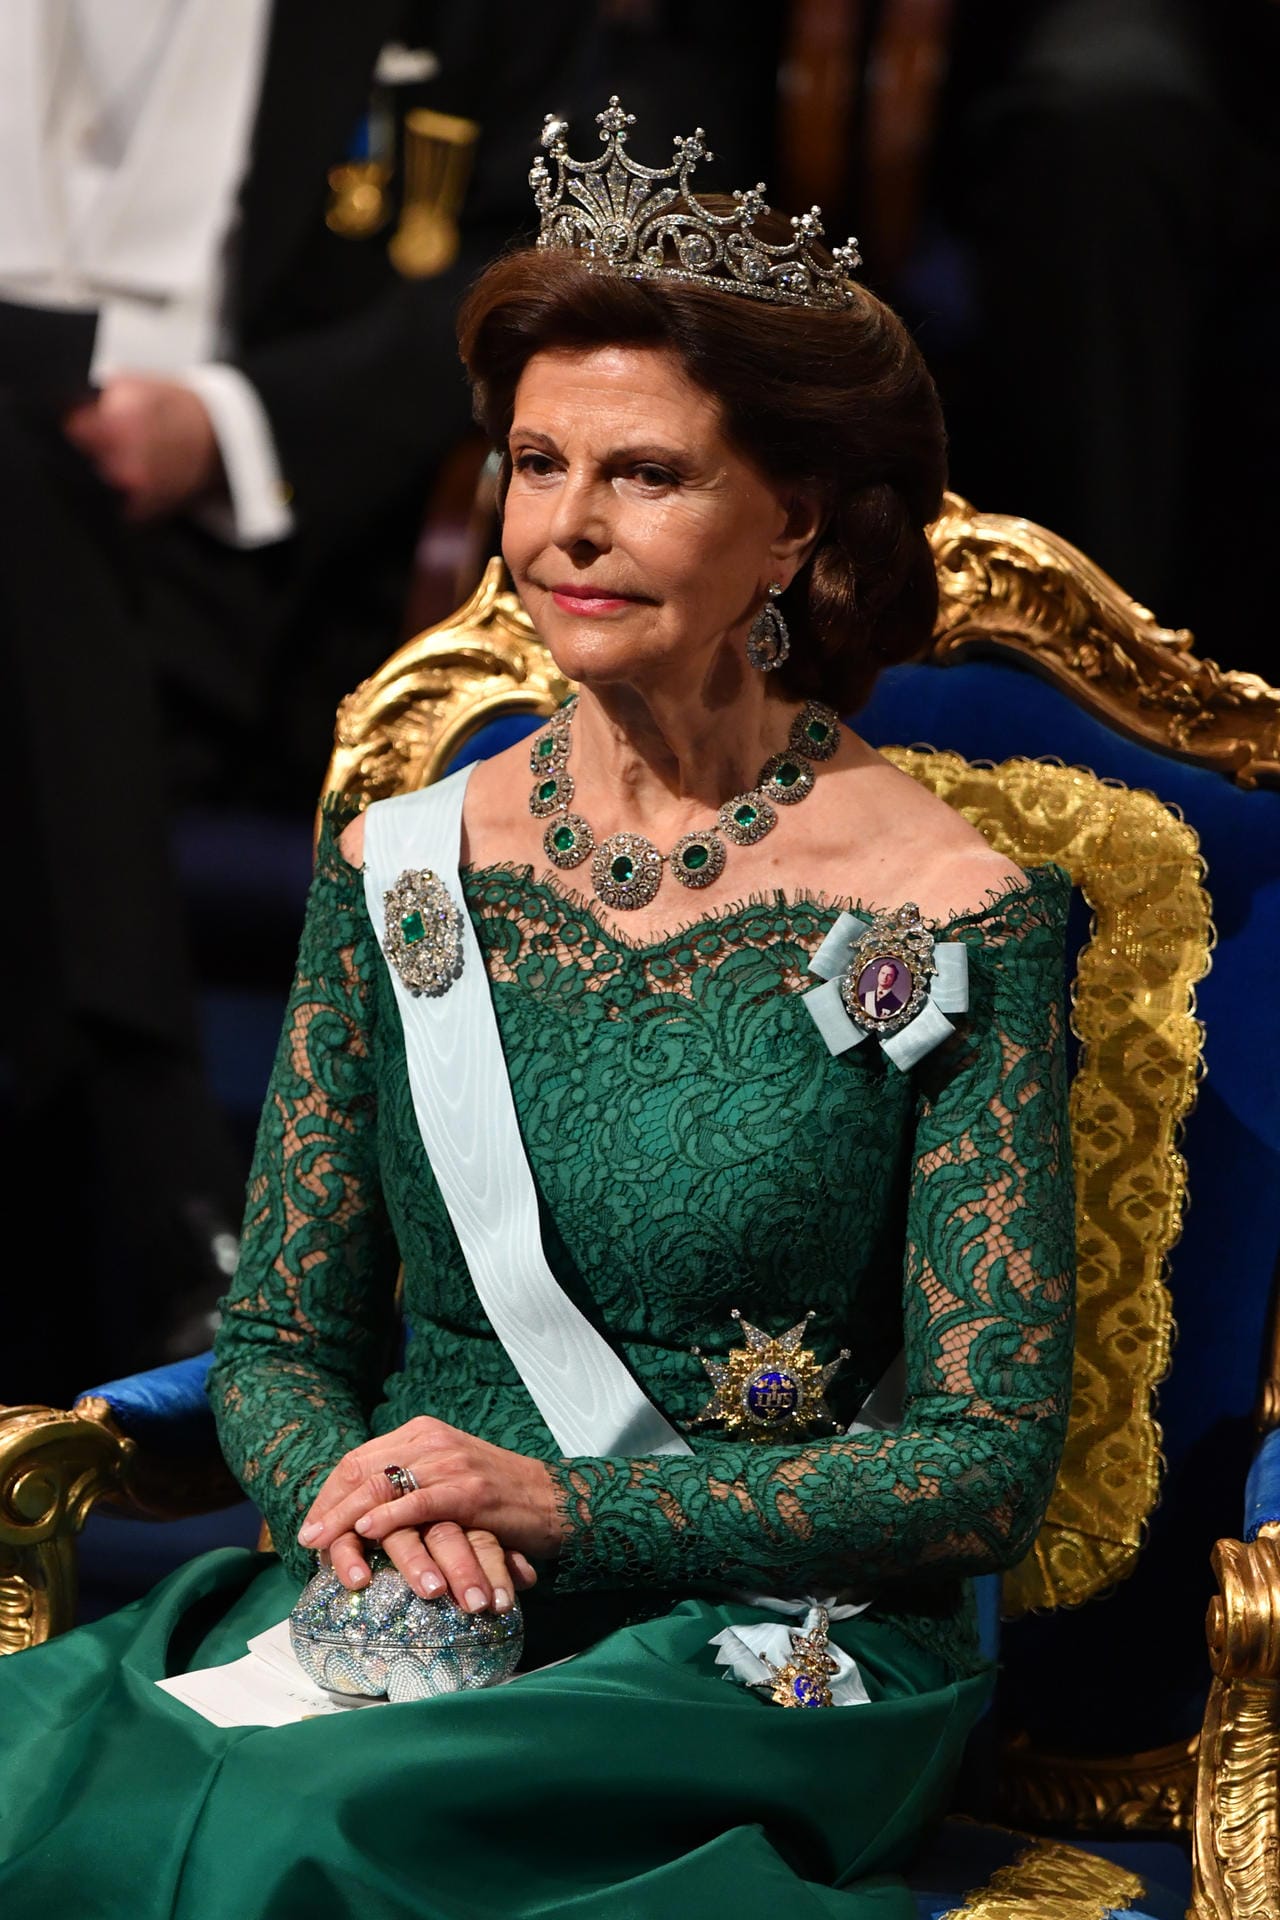 Königin Sofia entschied sich für ein schulterfreies Spitzenkleid in Grün.